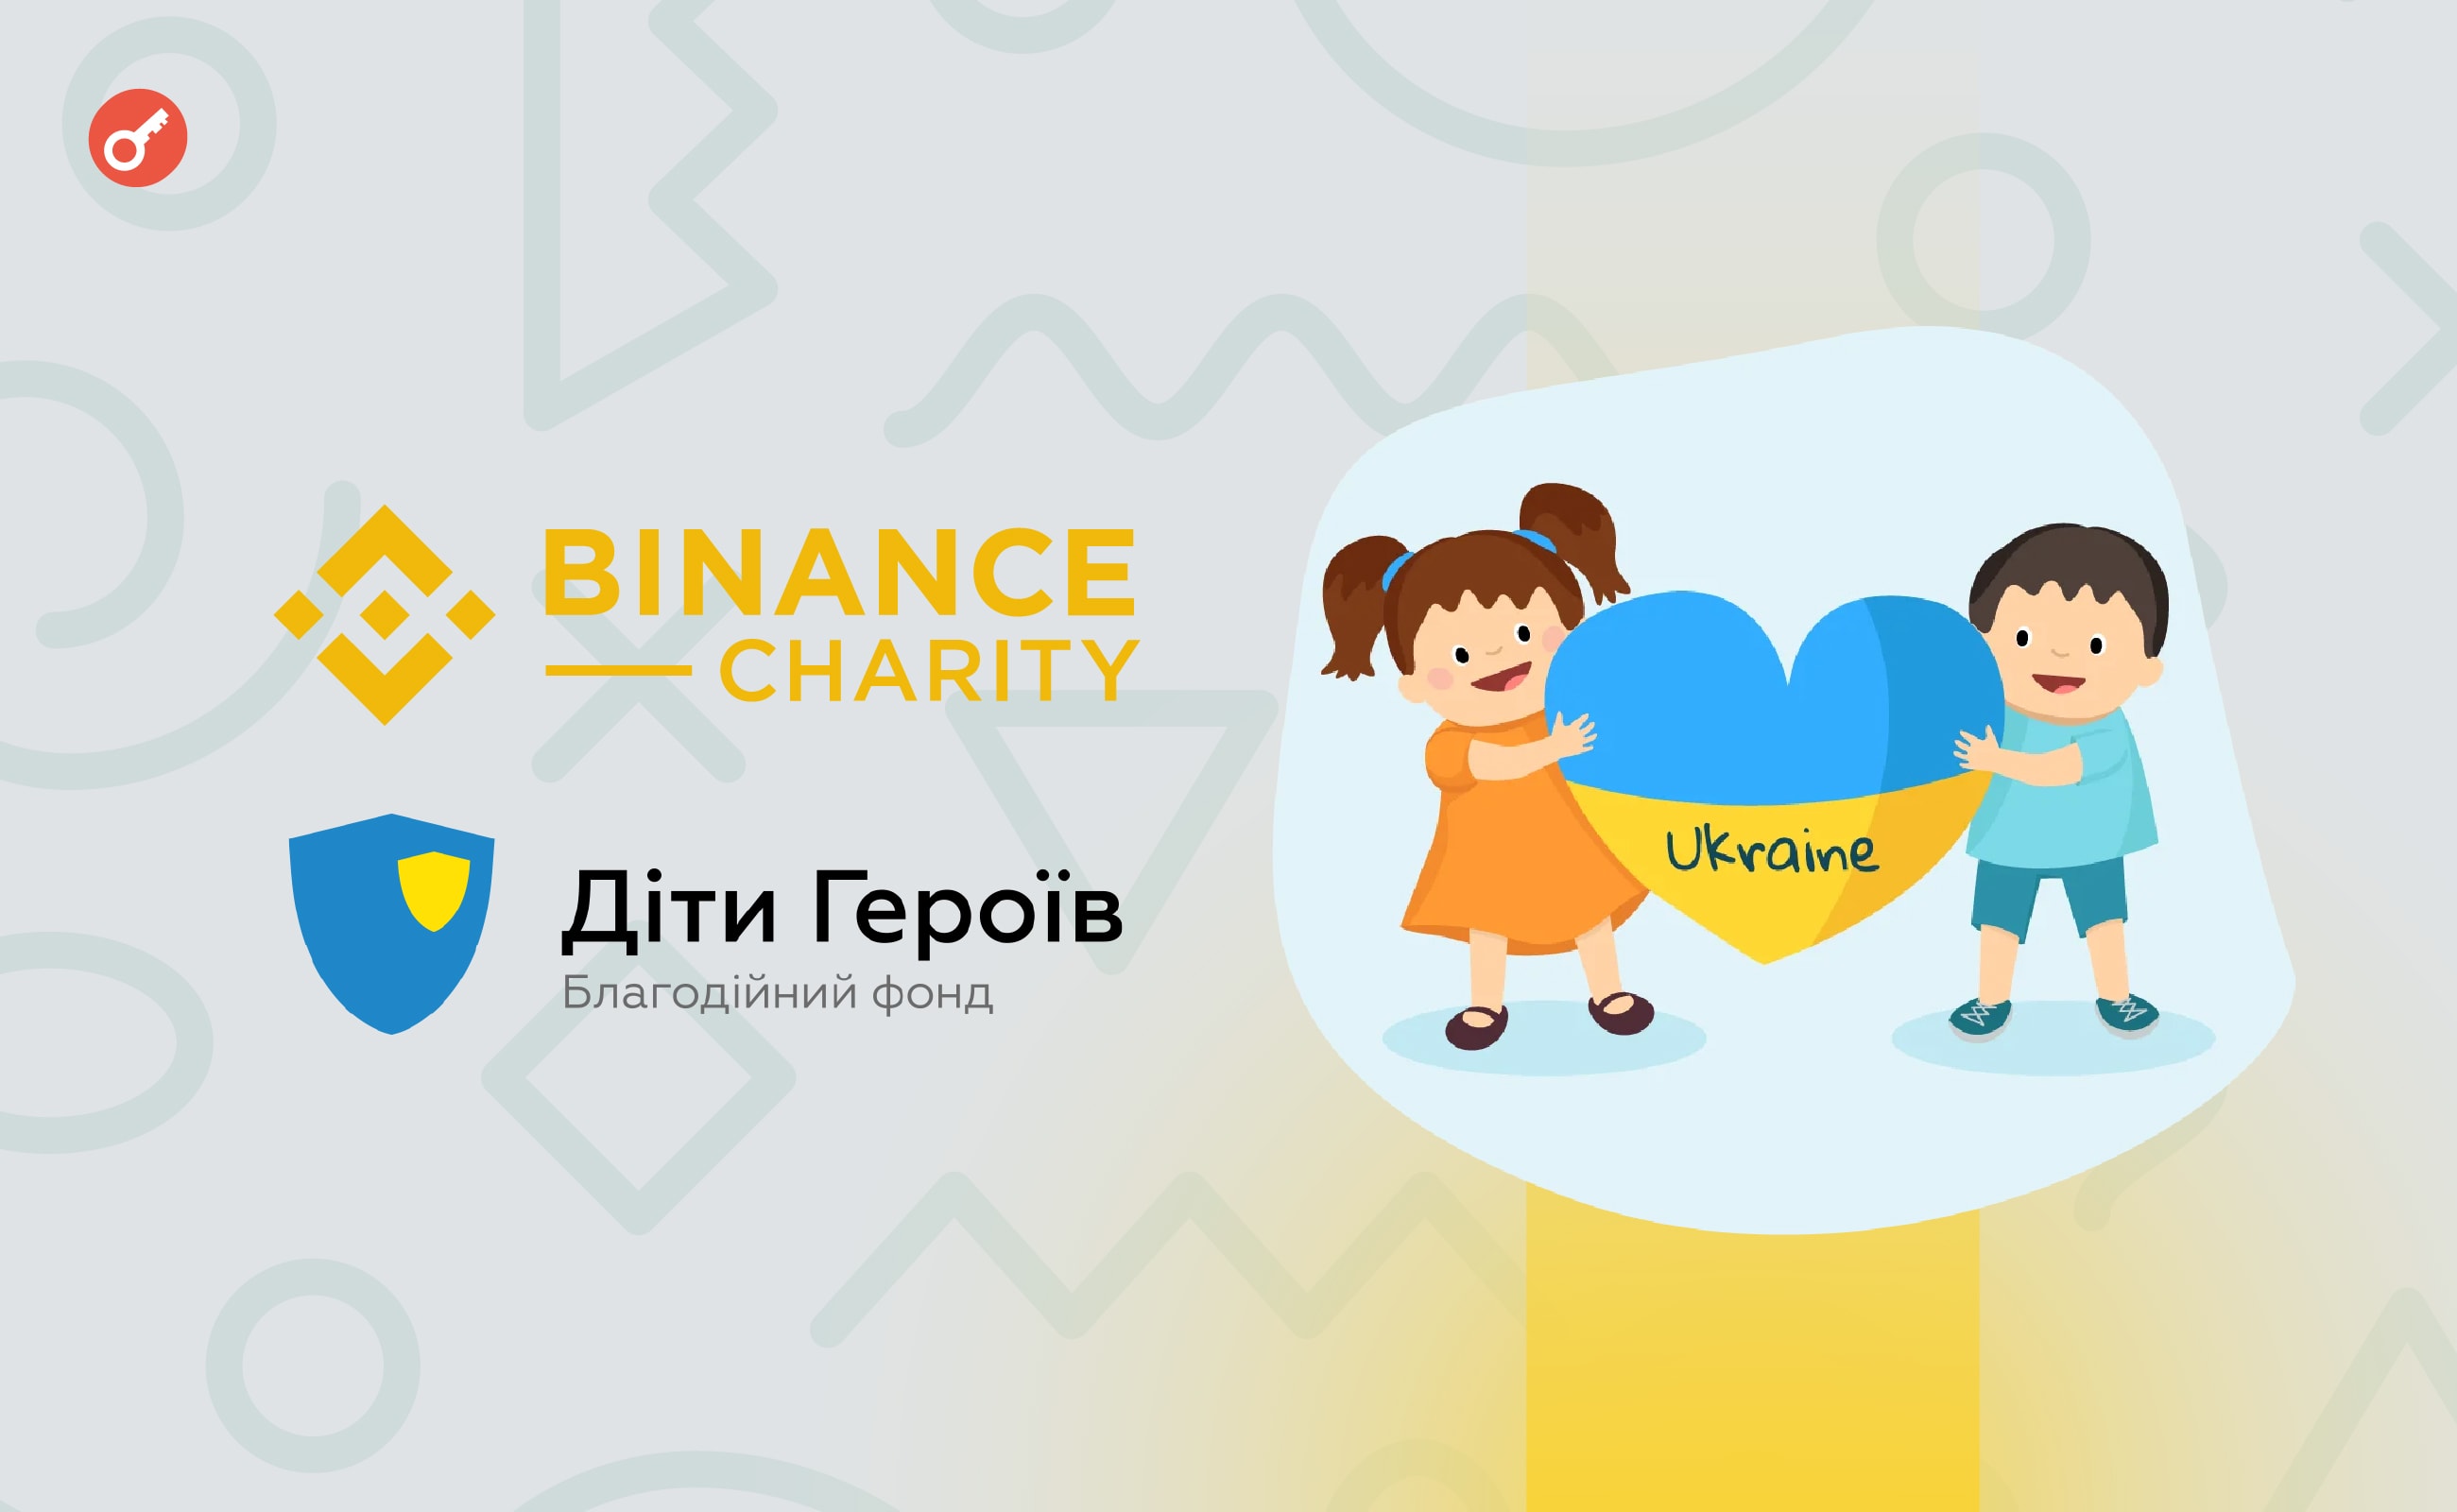 Binance Charity та фонд «Діти Героїв» об’єднались для підтримки постраждалих від війни в Україні дітей. Головний колаж новини.